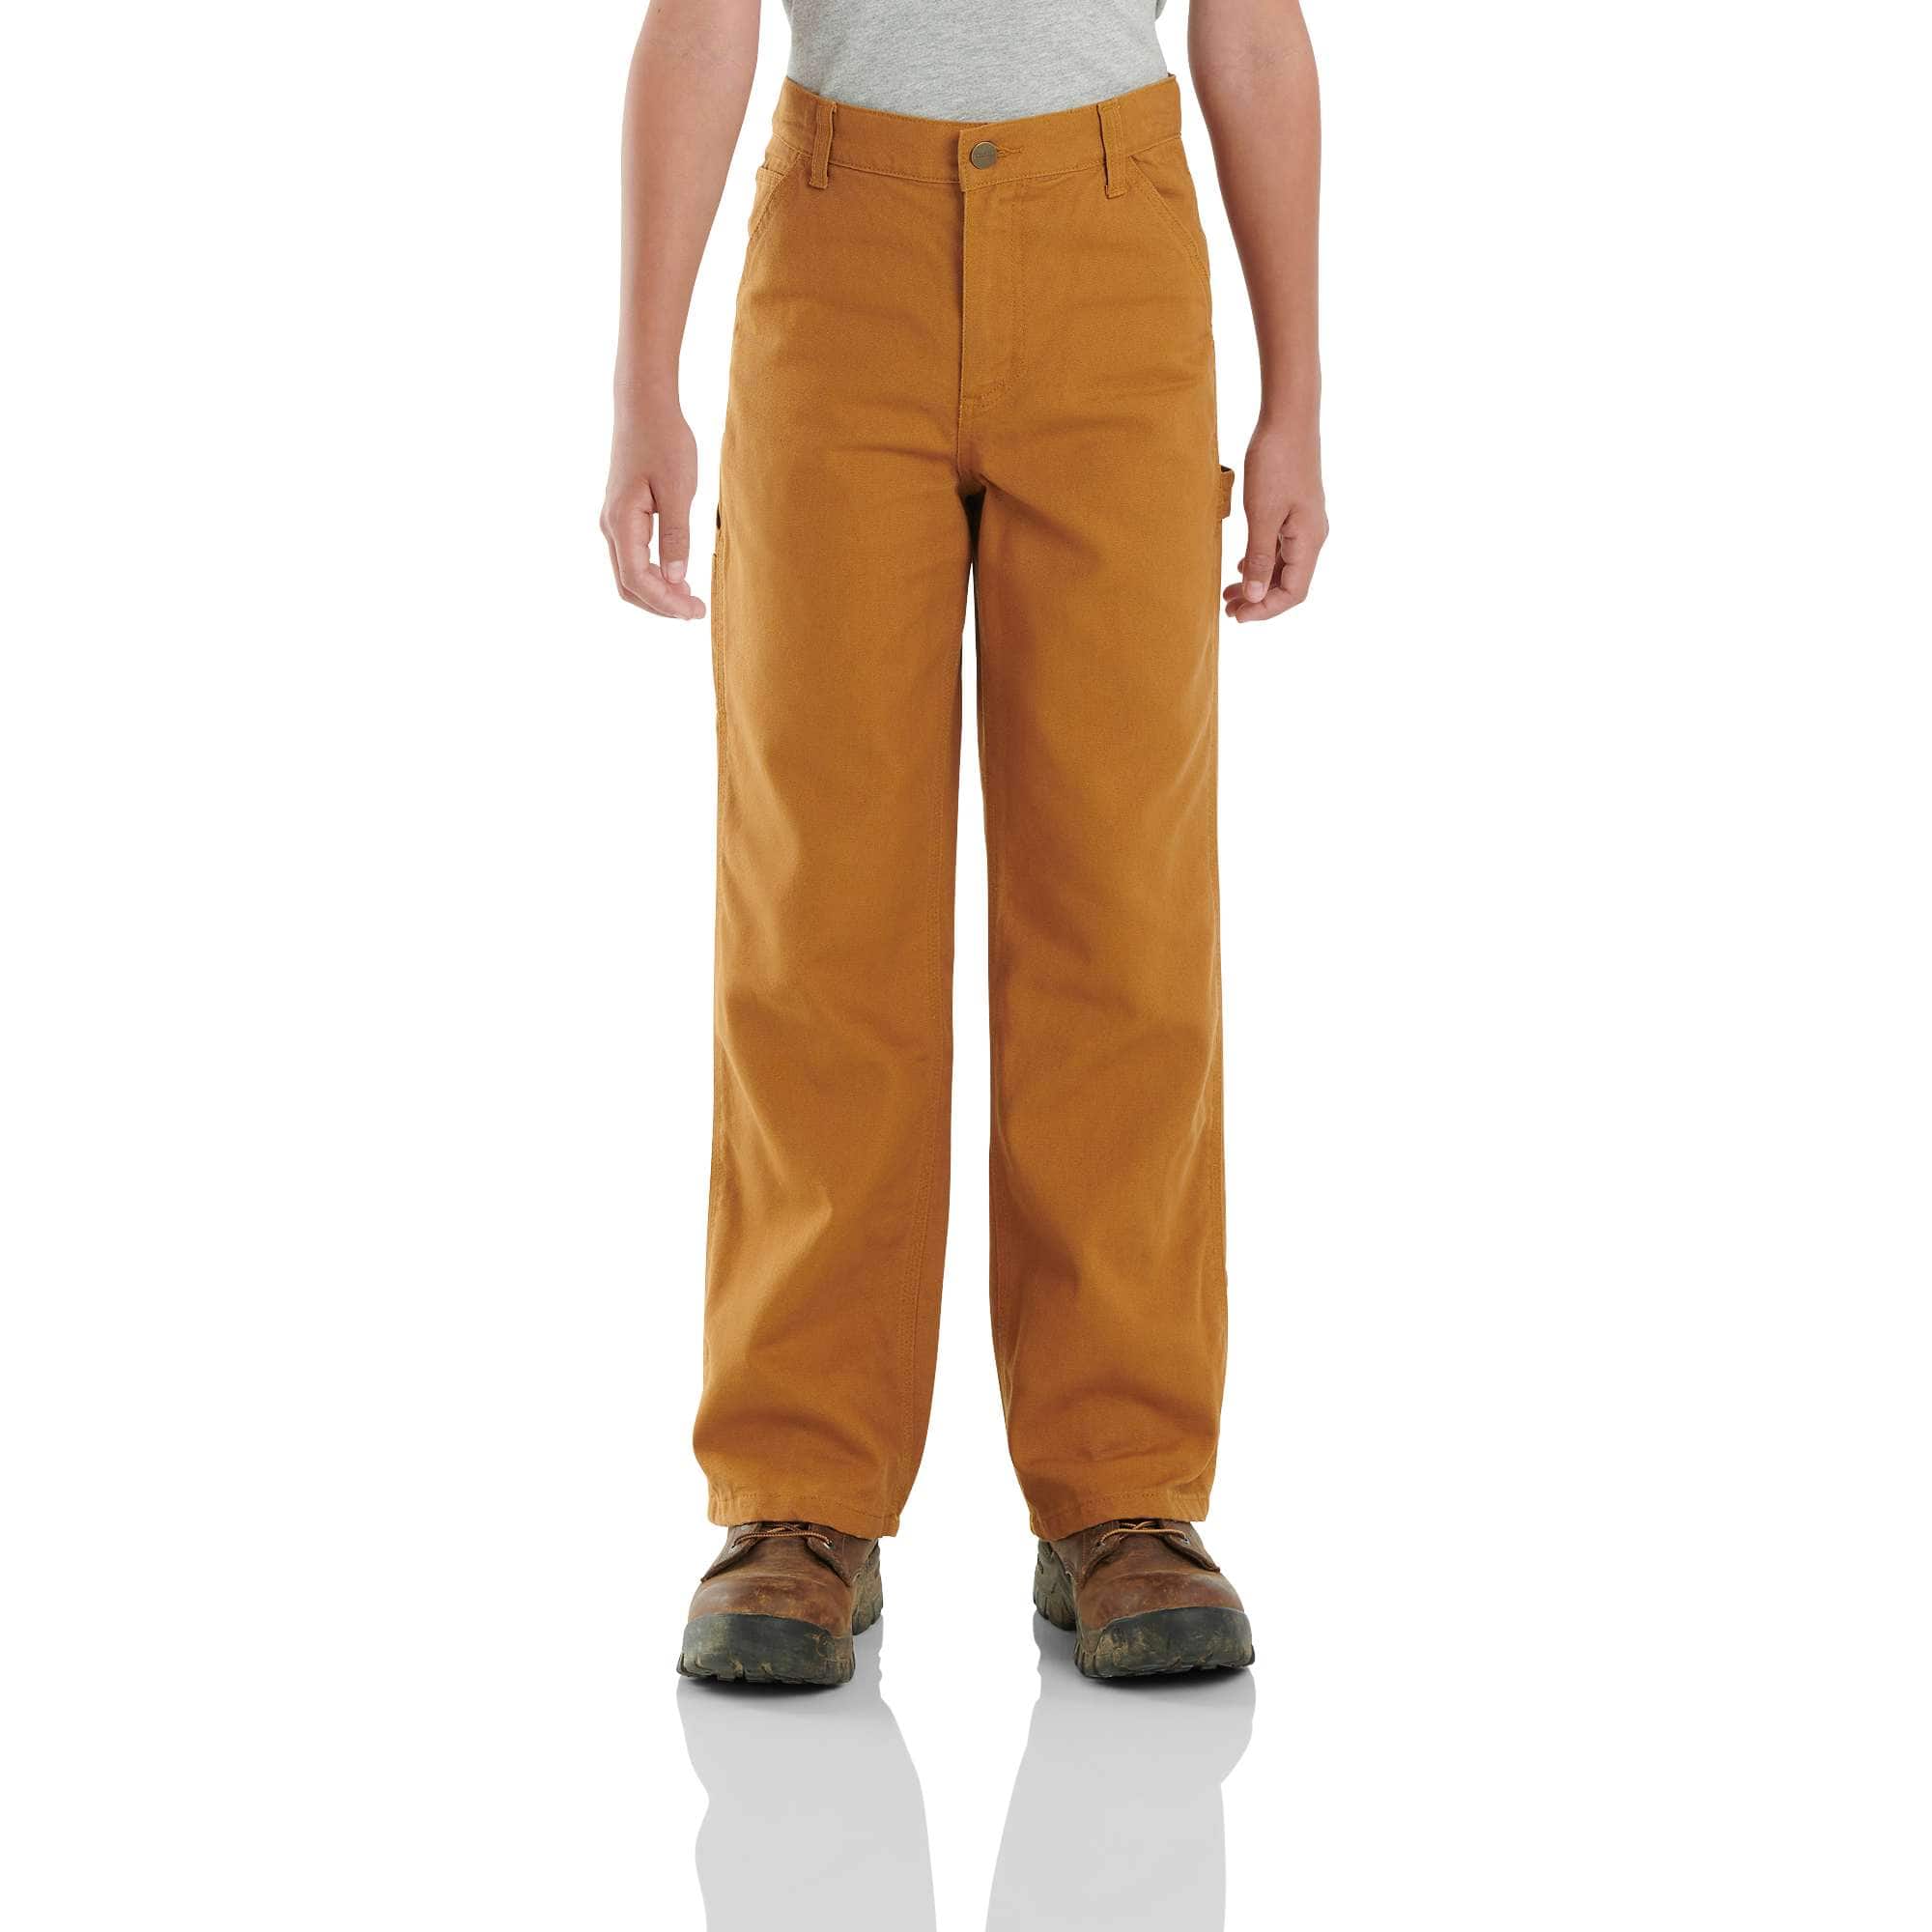 Boys 8-16 Gawer Workwear Trousers